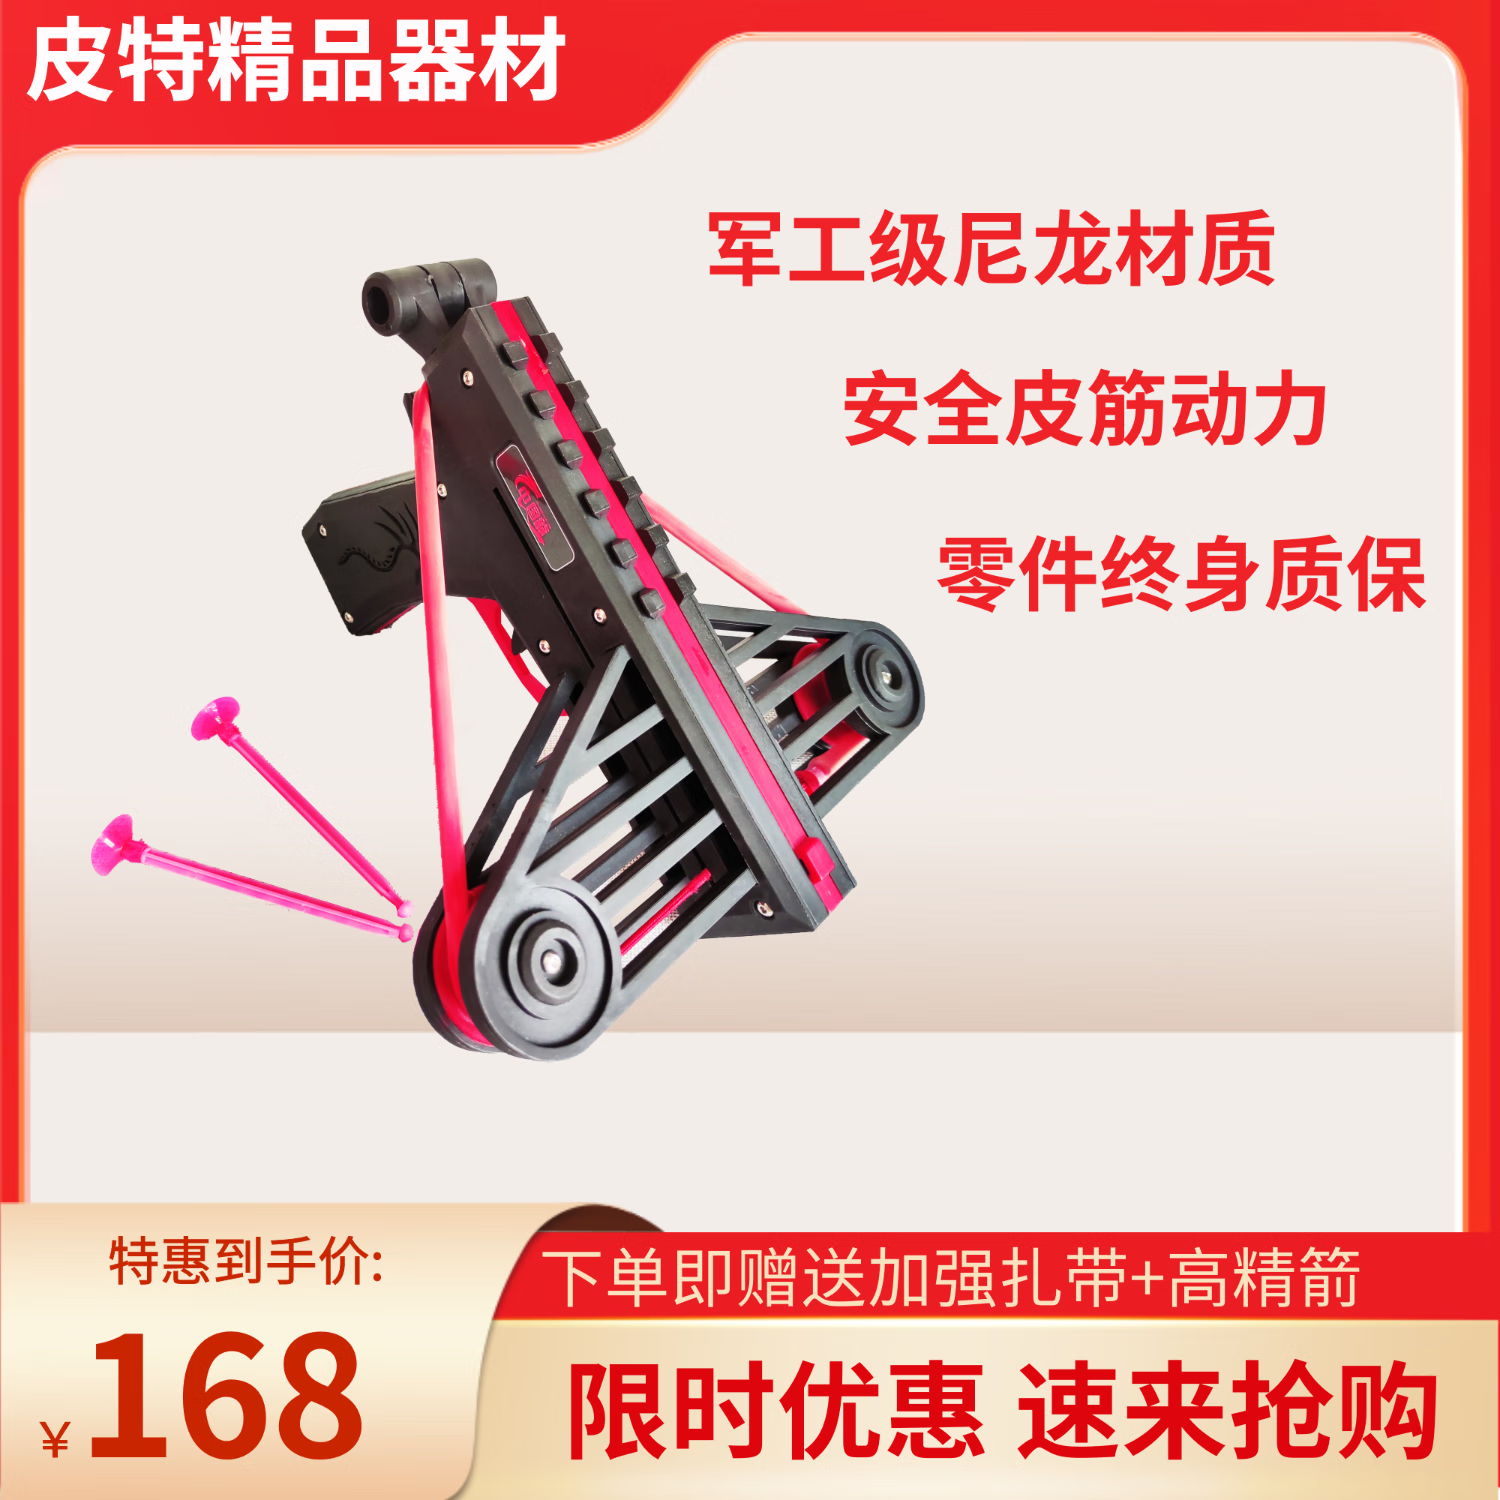 中国龙弹弓拼装模型玩具枪吸盘软箭发射器室内解压软弹枪手枪玩具 手动 2发 额外赠送加强配件